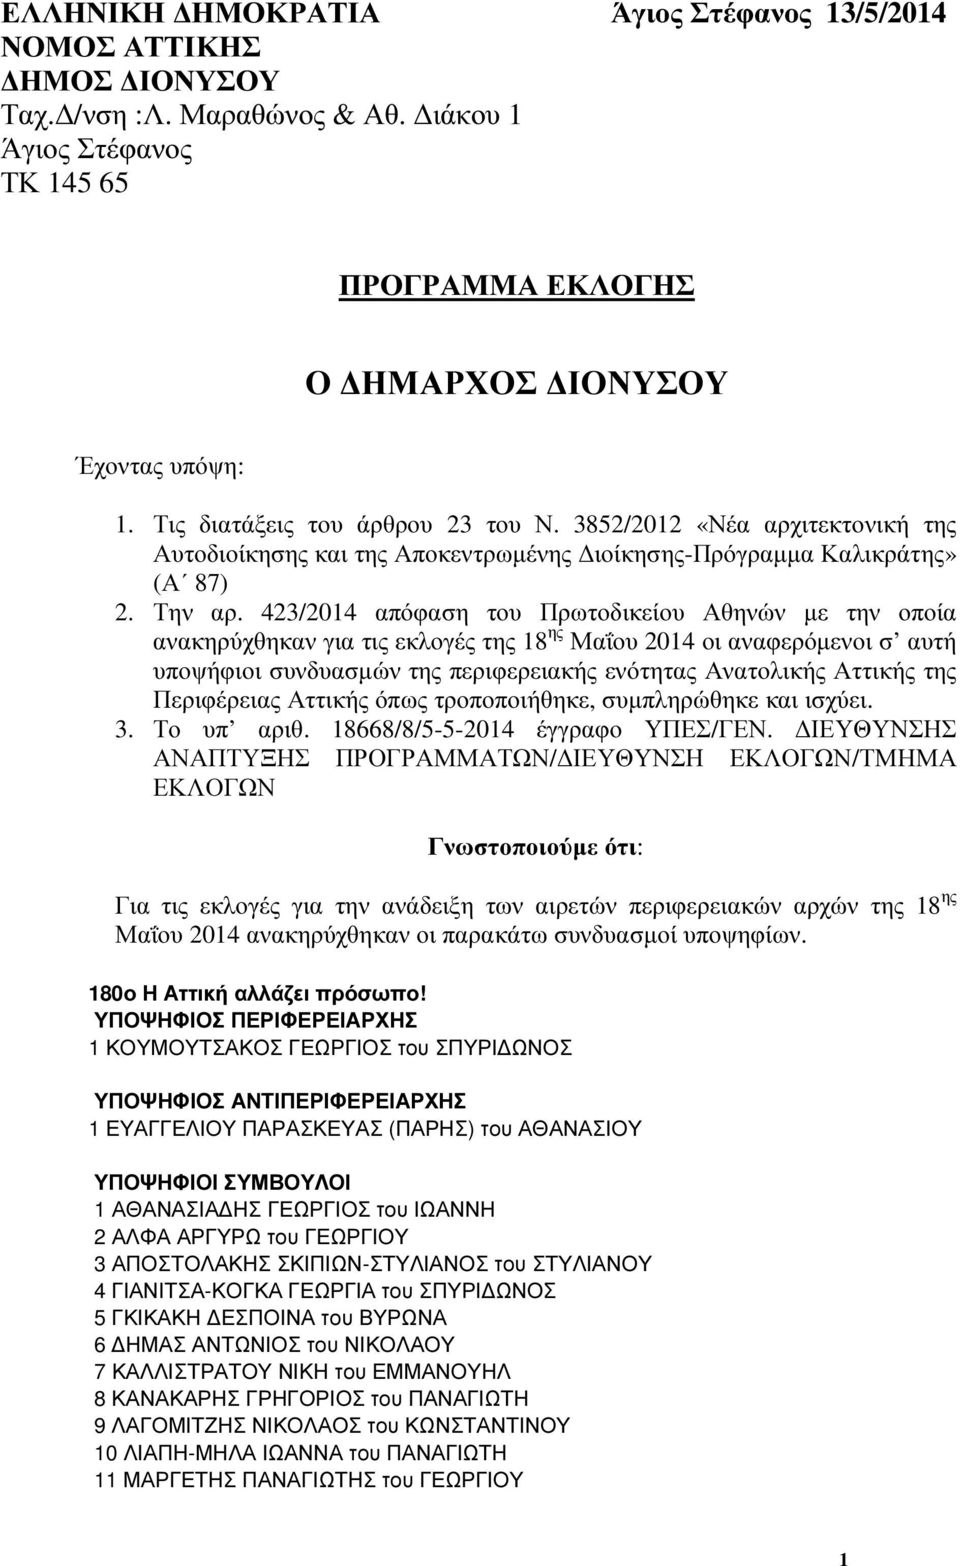 423/2014 απόφαση του Πρωτοδικείου Αθηνών µε την οποία ανακηρύχθηκαν για τις εκλογές της 18 ης Μαΐου 2014 οι αναφερόµενοι σ αυτή υποψήφιοι συνδυασµών της περιφερειακής ενότητας Ανατολικής Αττικής της